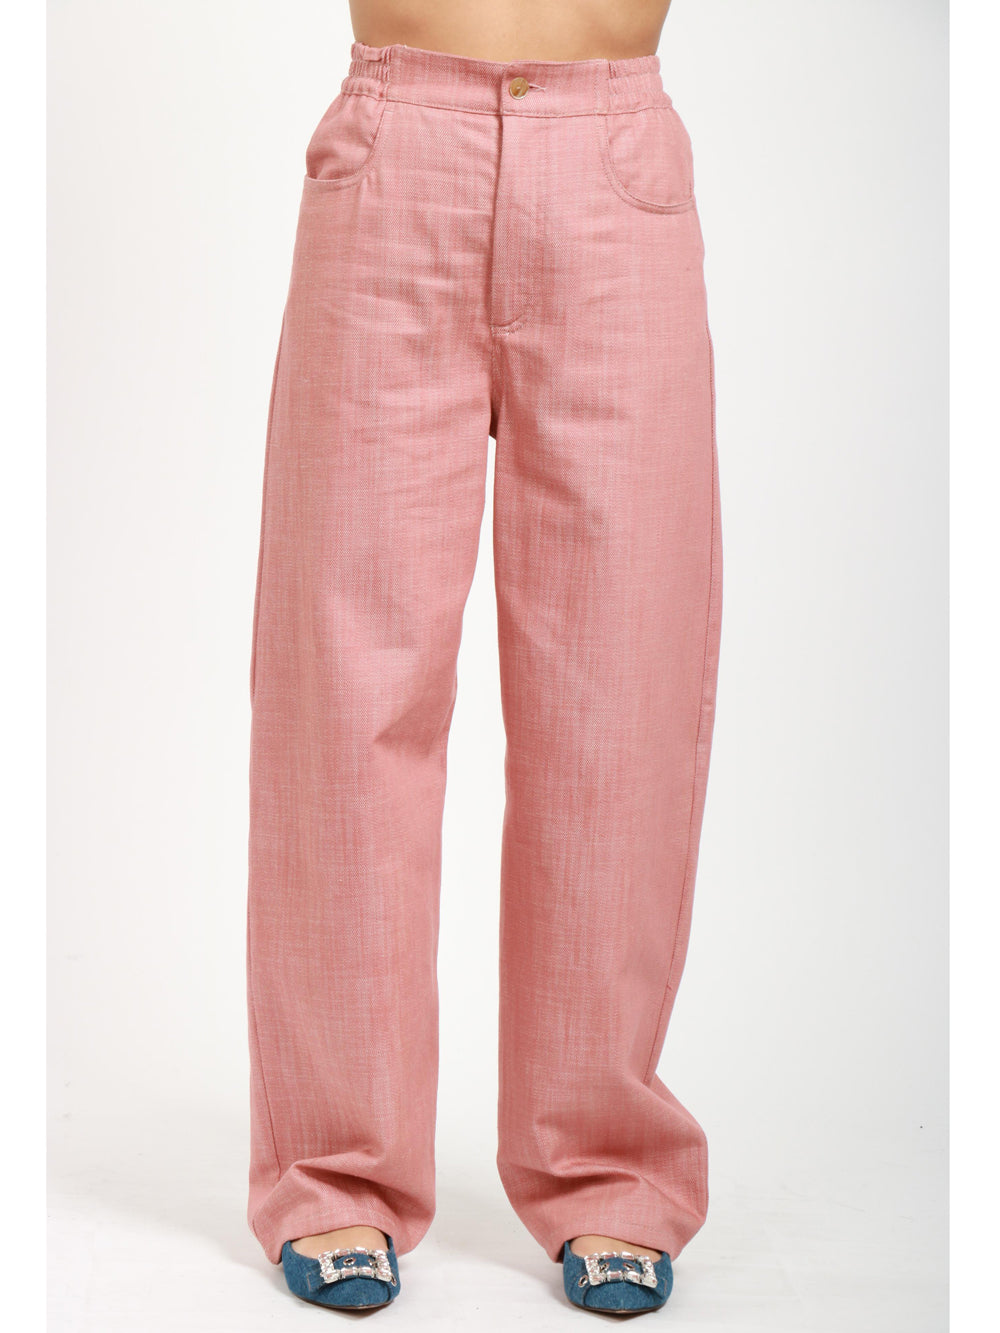 ATTIC & BARN Pantaloni Cortina in Cotone Rosa Effetto Denim Rosa